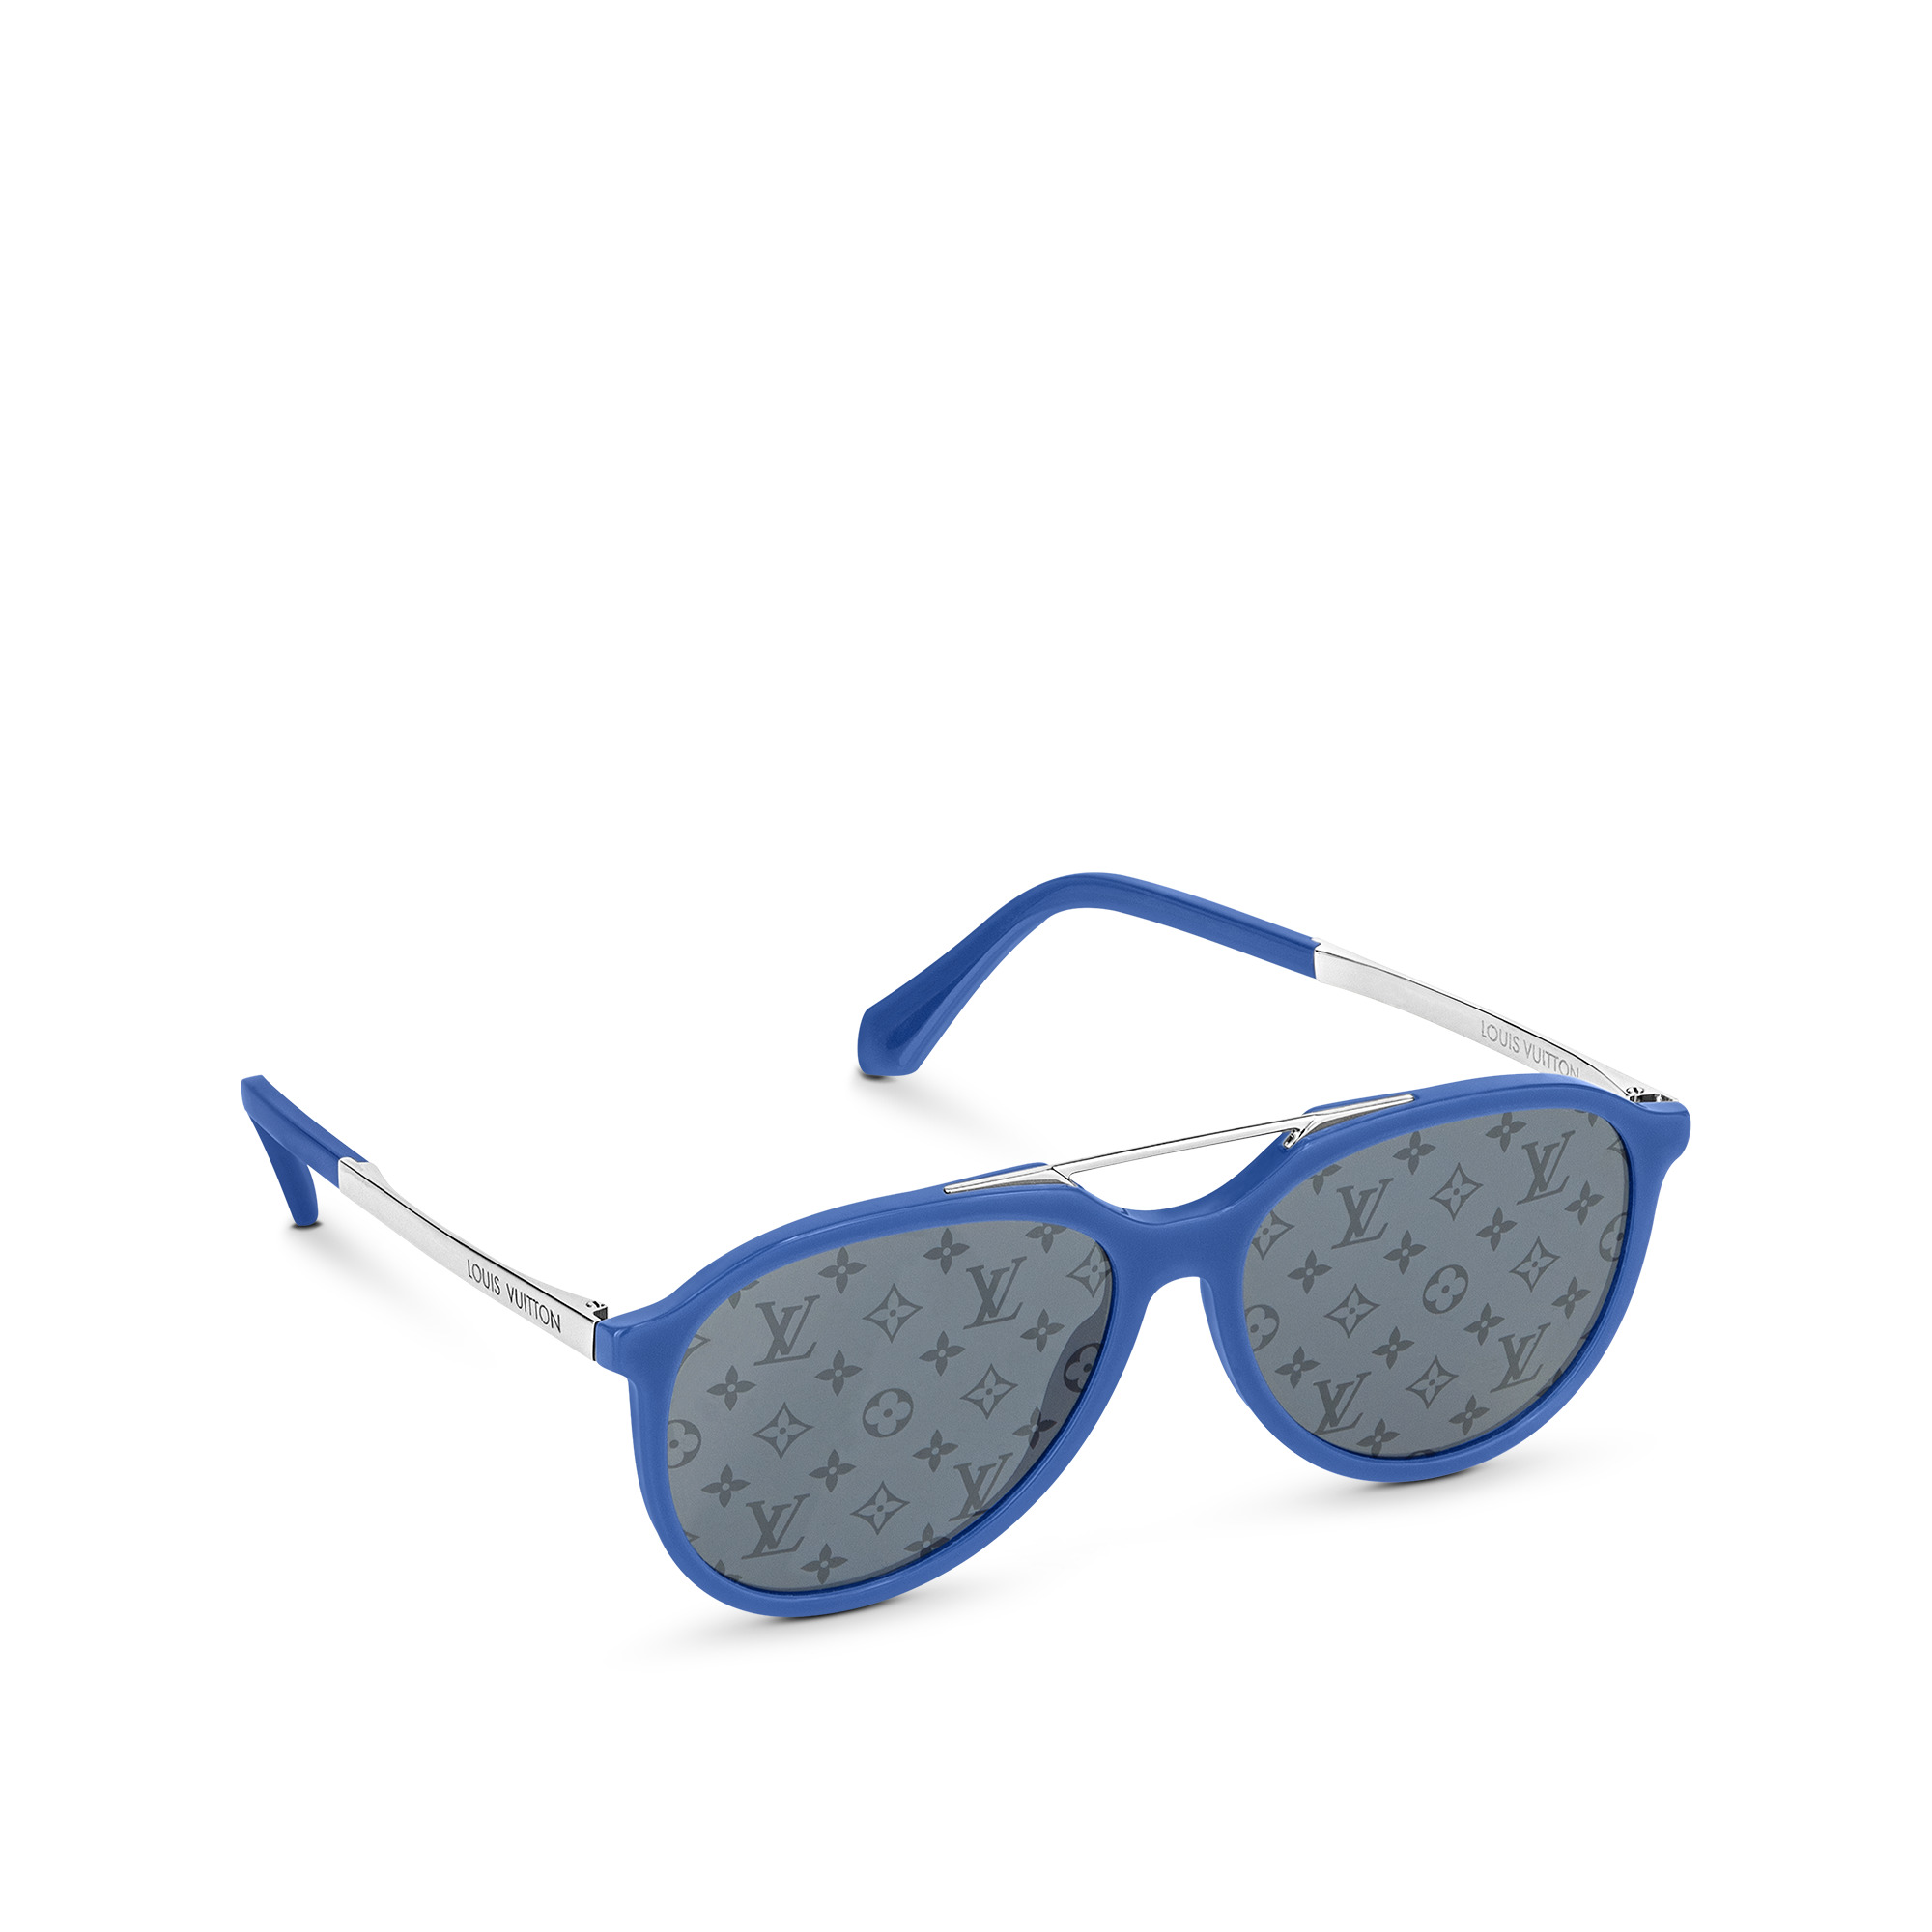 Louis Vuitton Mix It Up Round Sunglasses